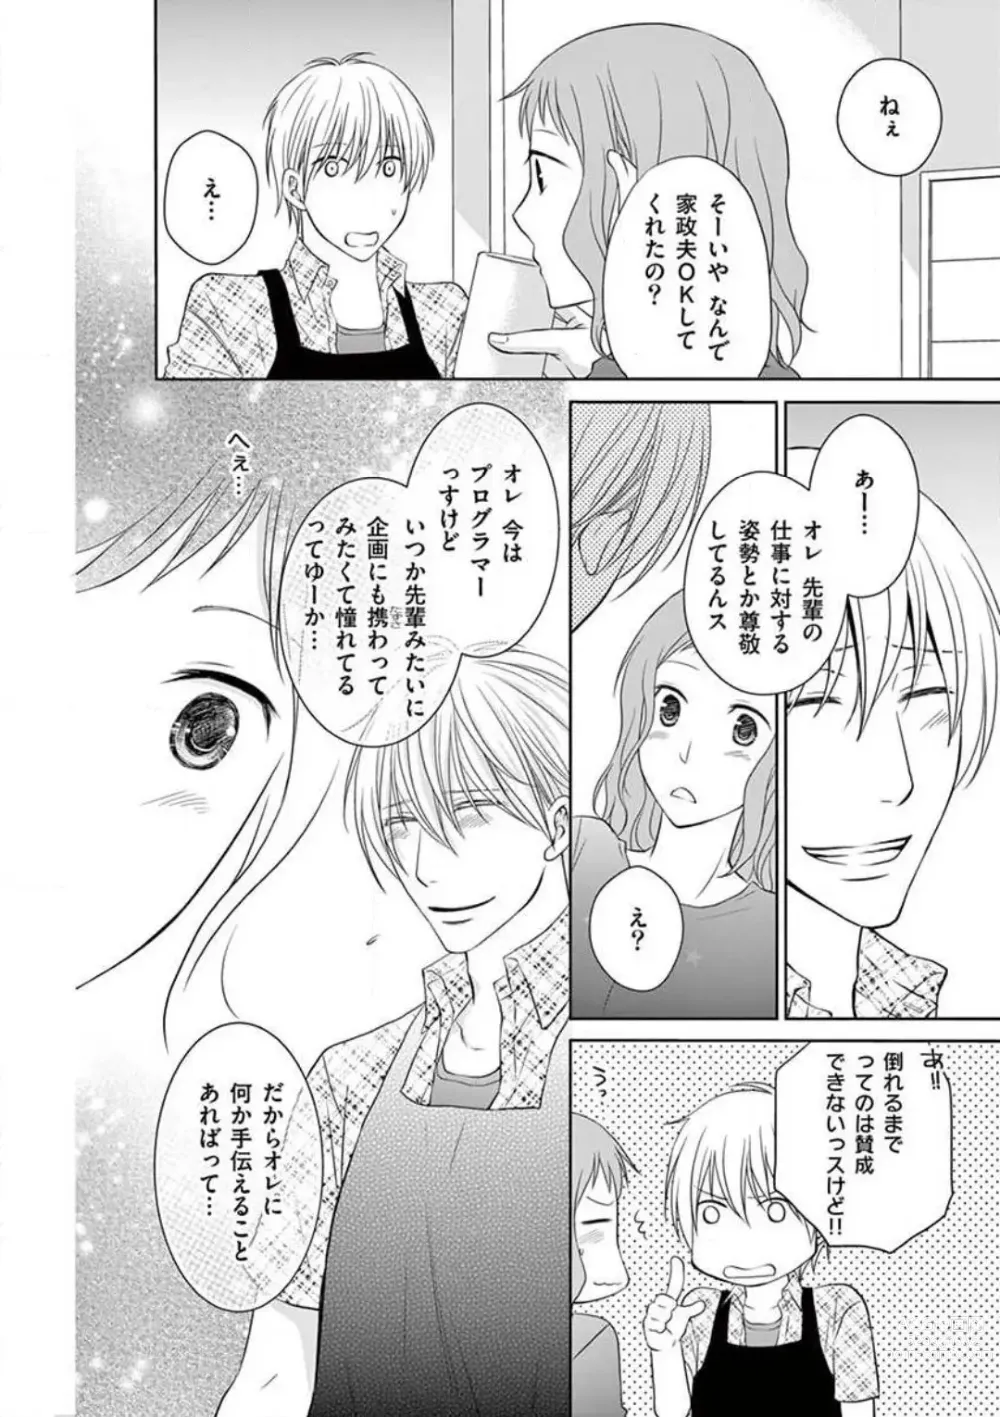 Page 14 of manga Senpai Gentei no Kedamonodesukara 〜 Kanshō-yō Ikemen no Hotobashiru Aijō〜 1-4